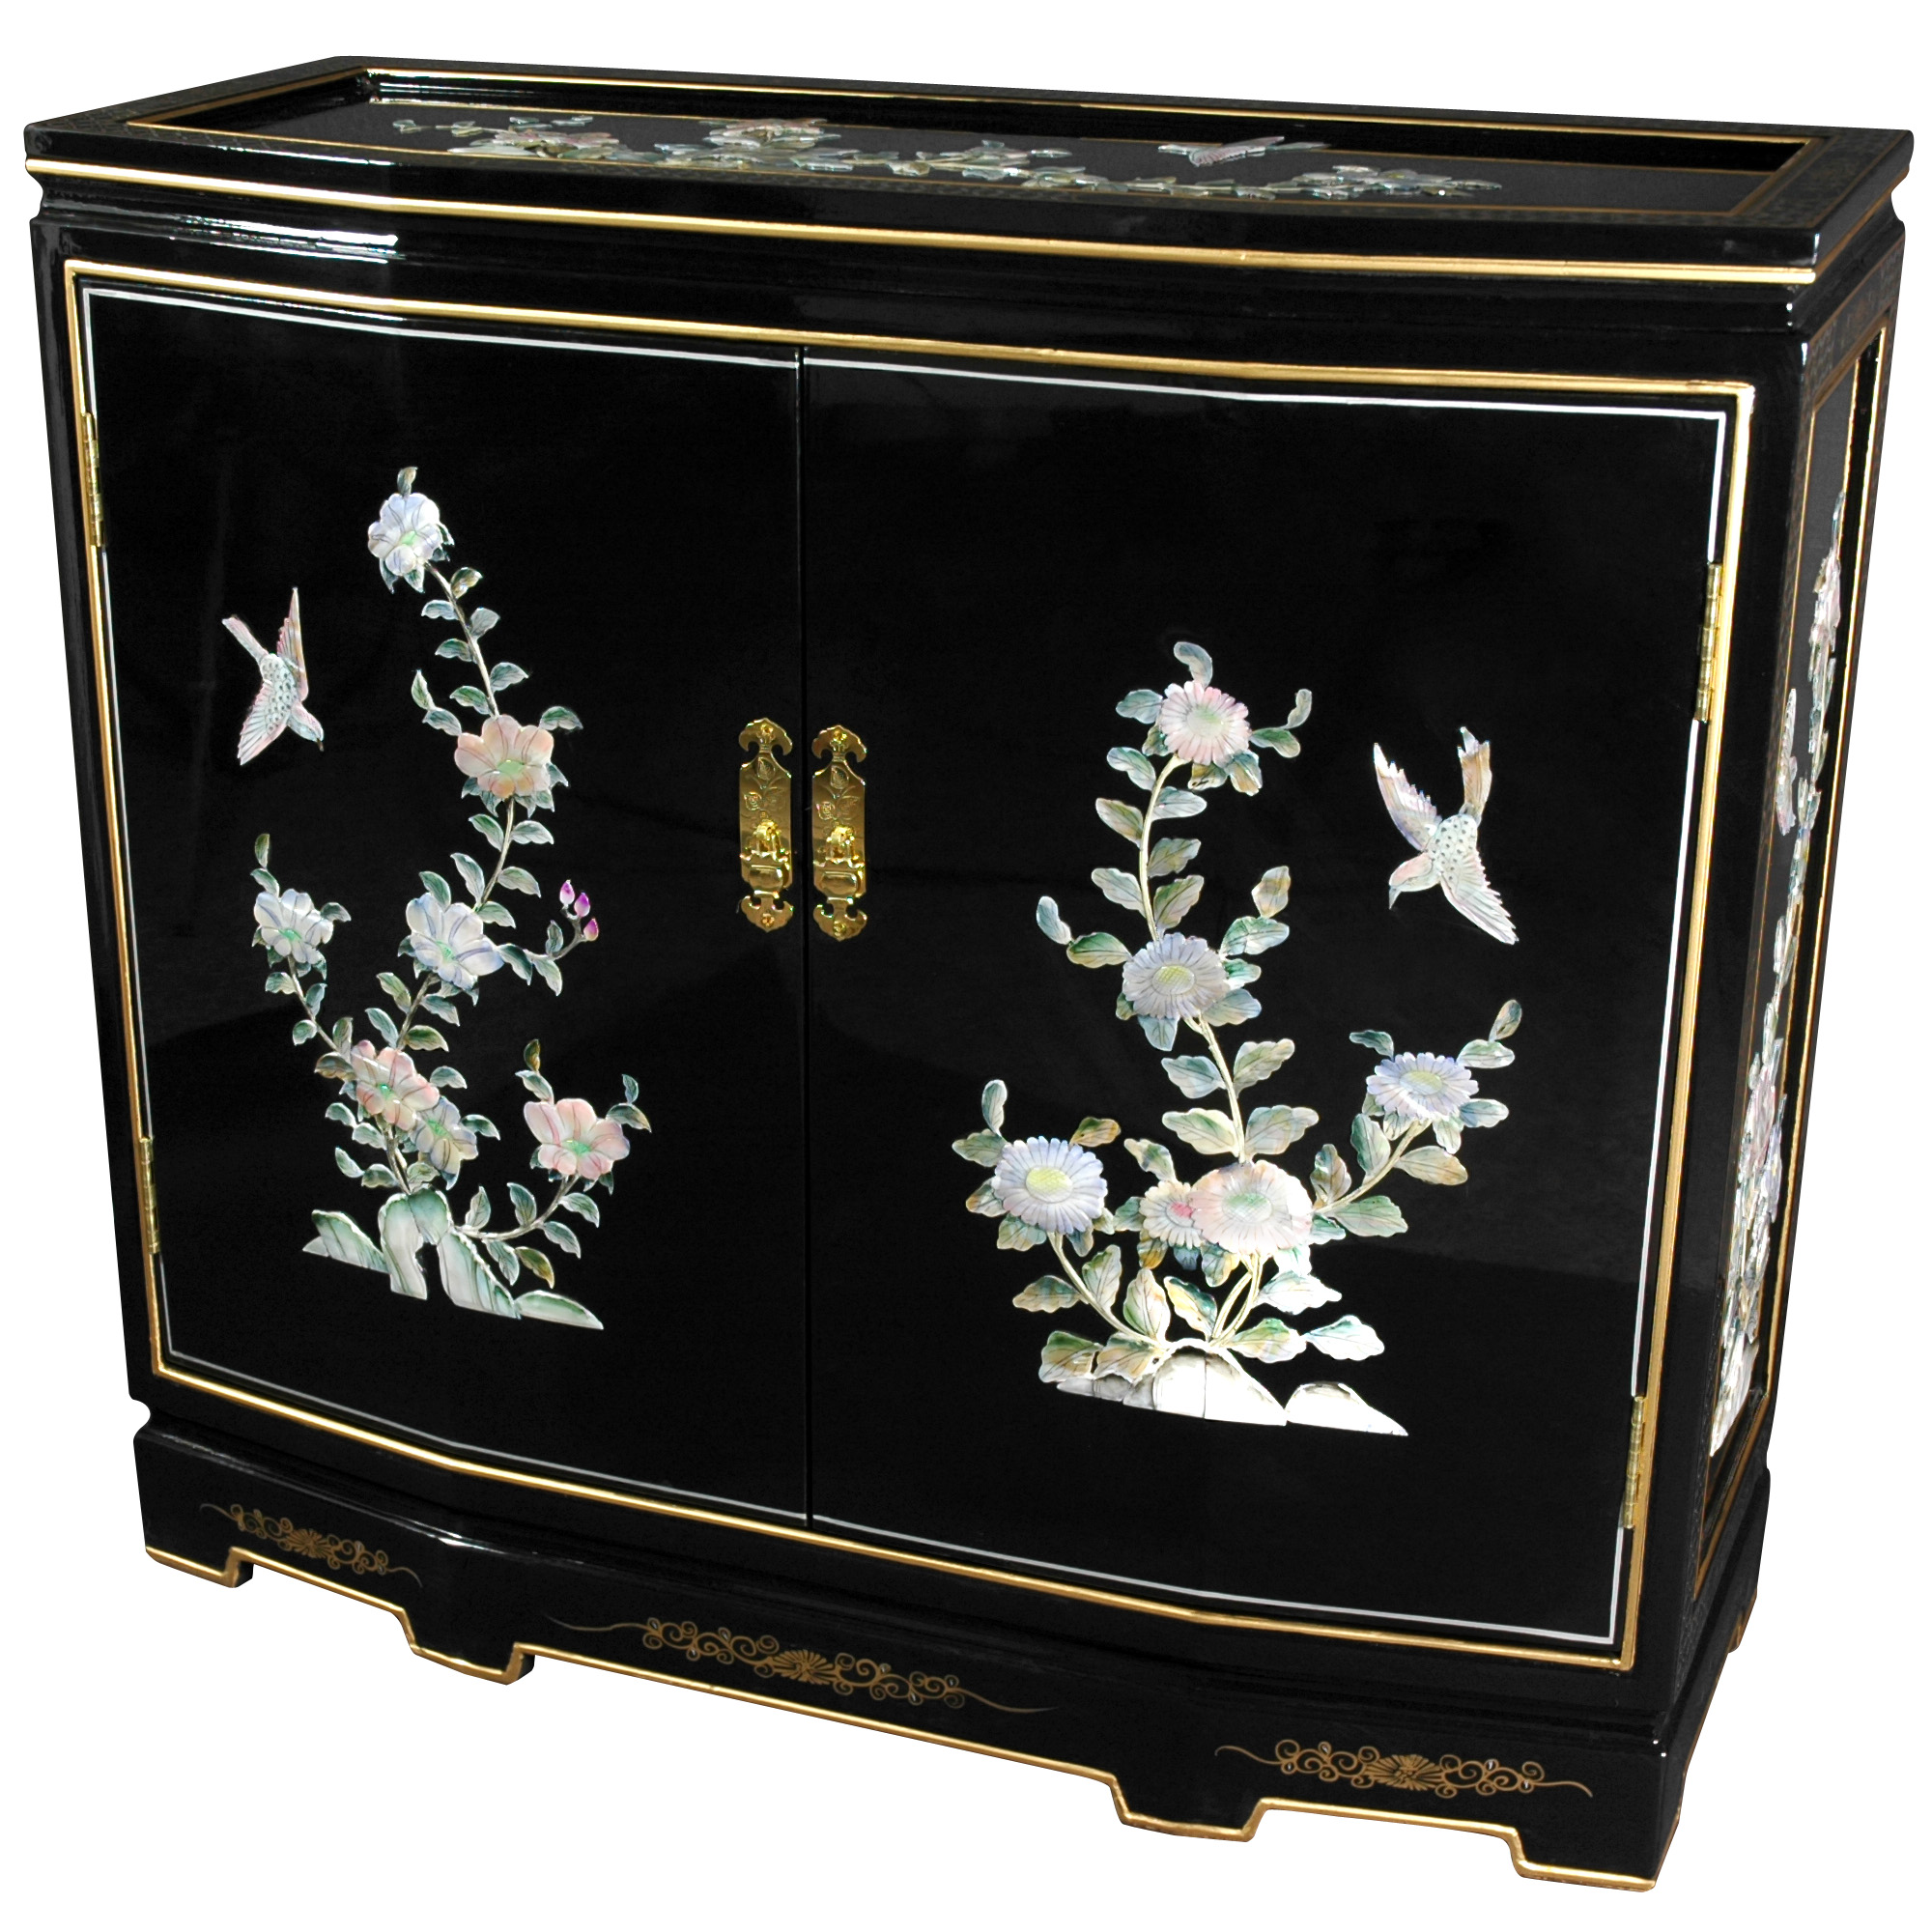 Buy Slant Front Cabinet - Floral Design Online (LCQ-35-BB